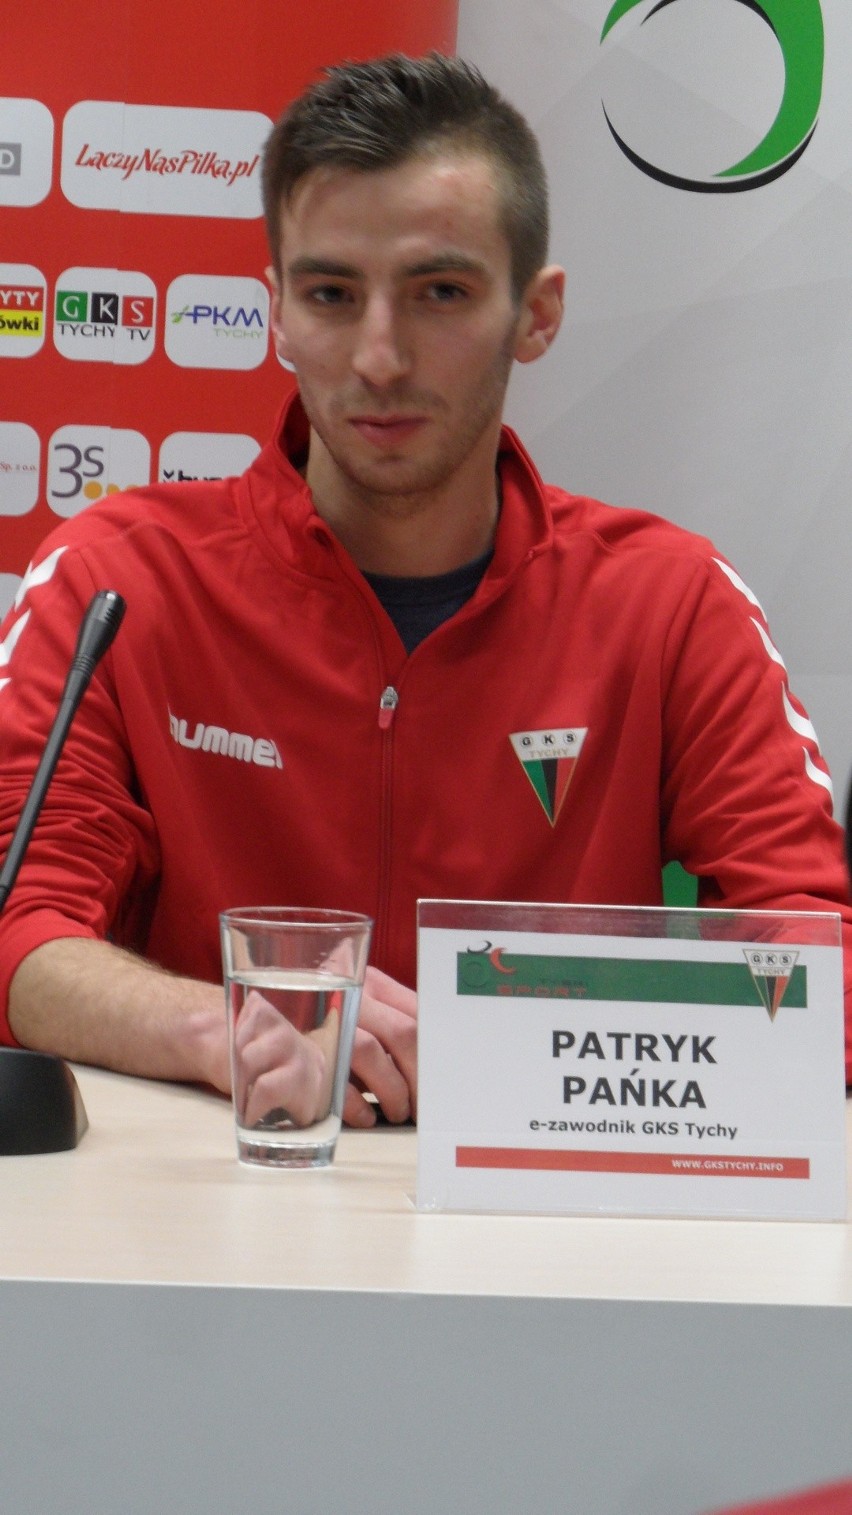 Patryk Paniol Pańka e-zawodnikiem GKS Tychy